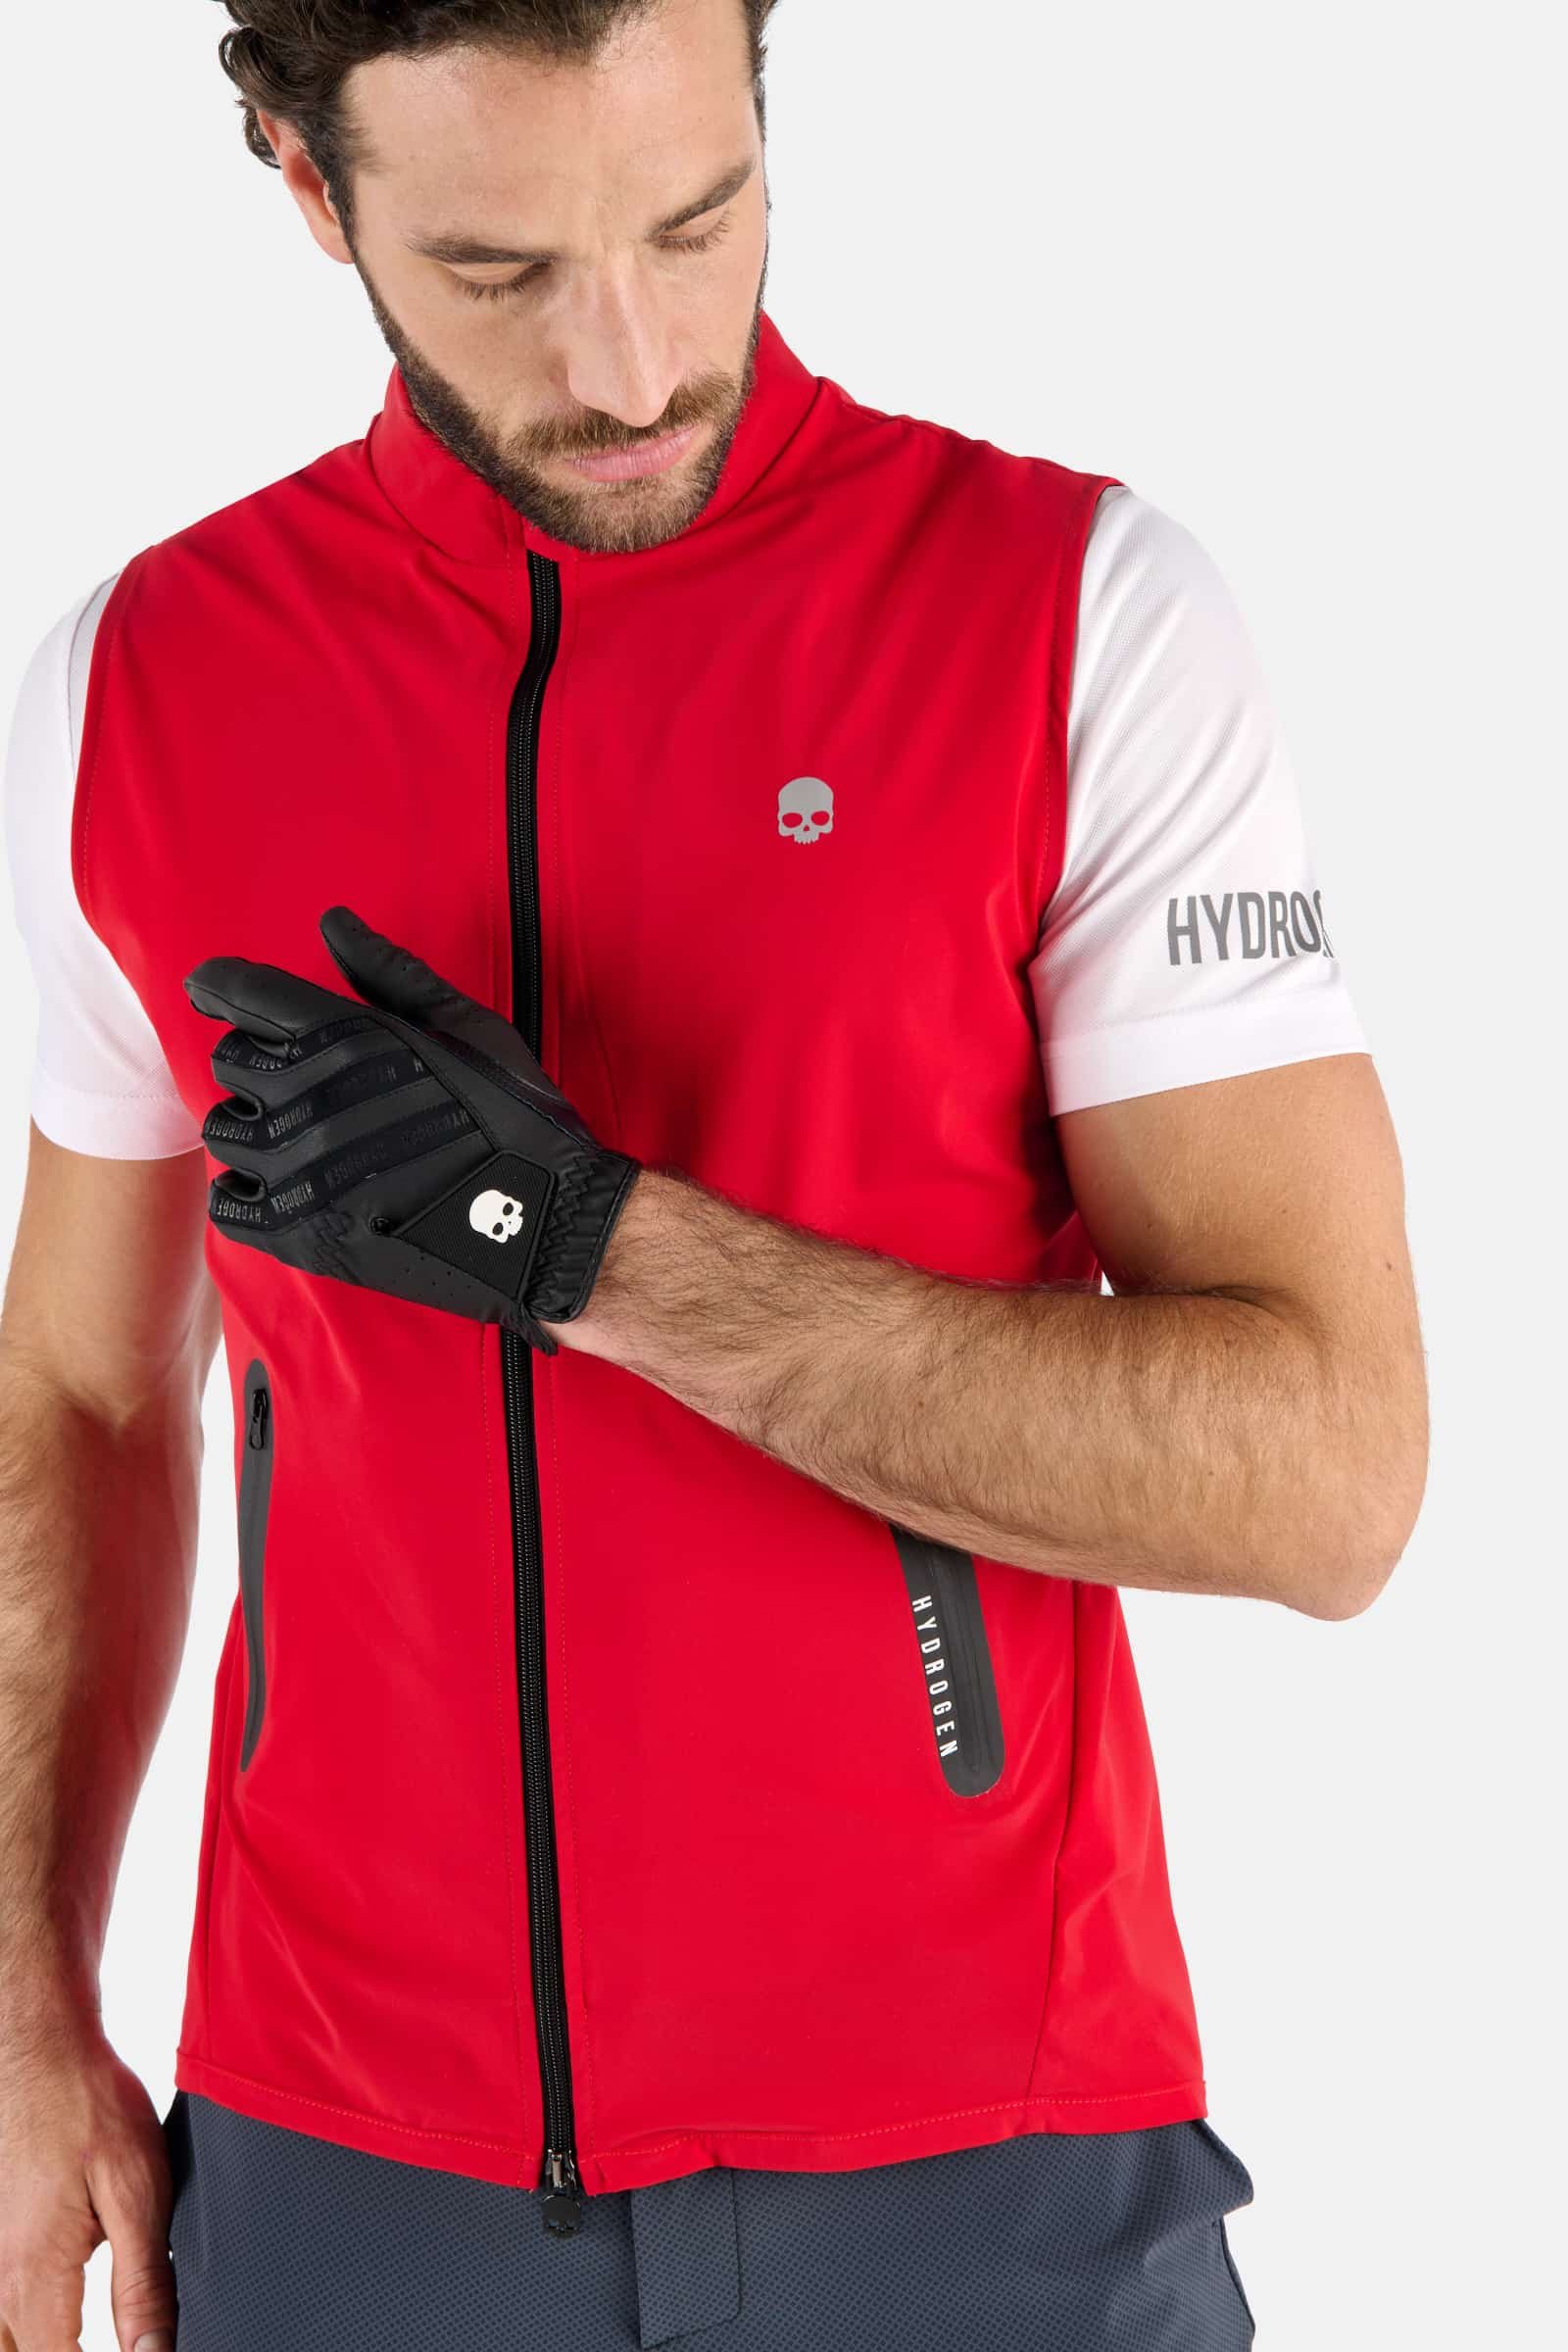 GOLF VEST - RED - Hydrogen - Luxury Sportwear